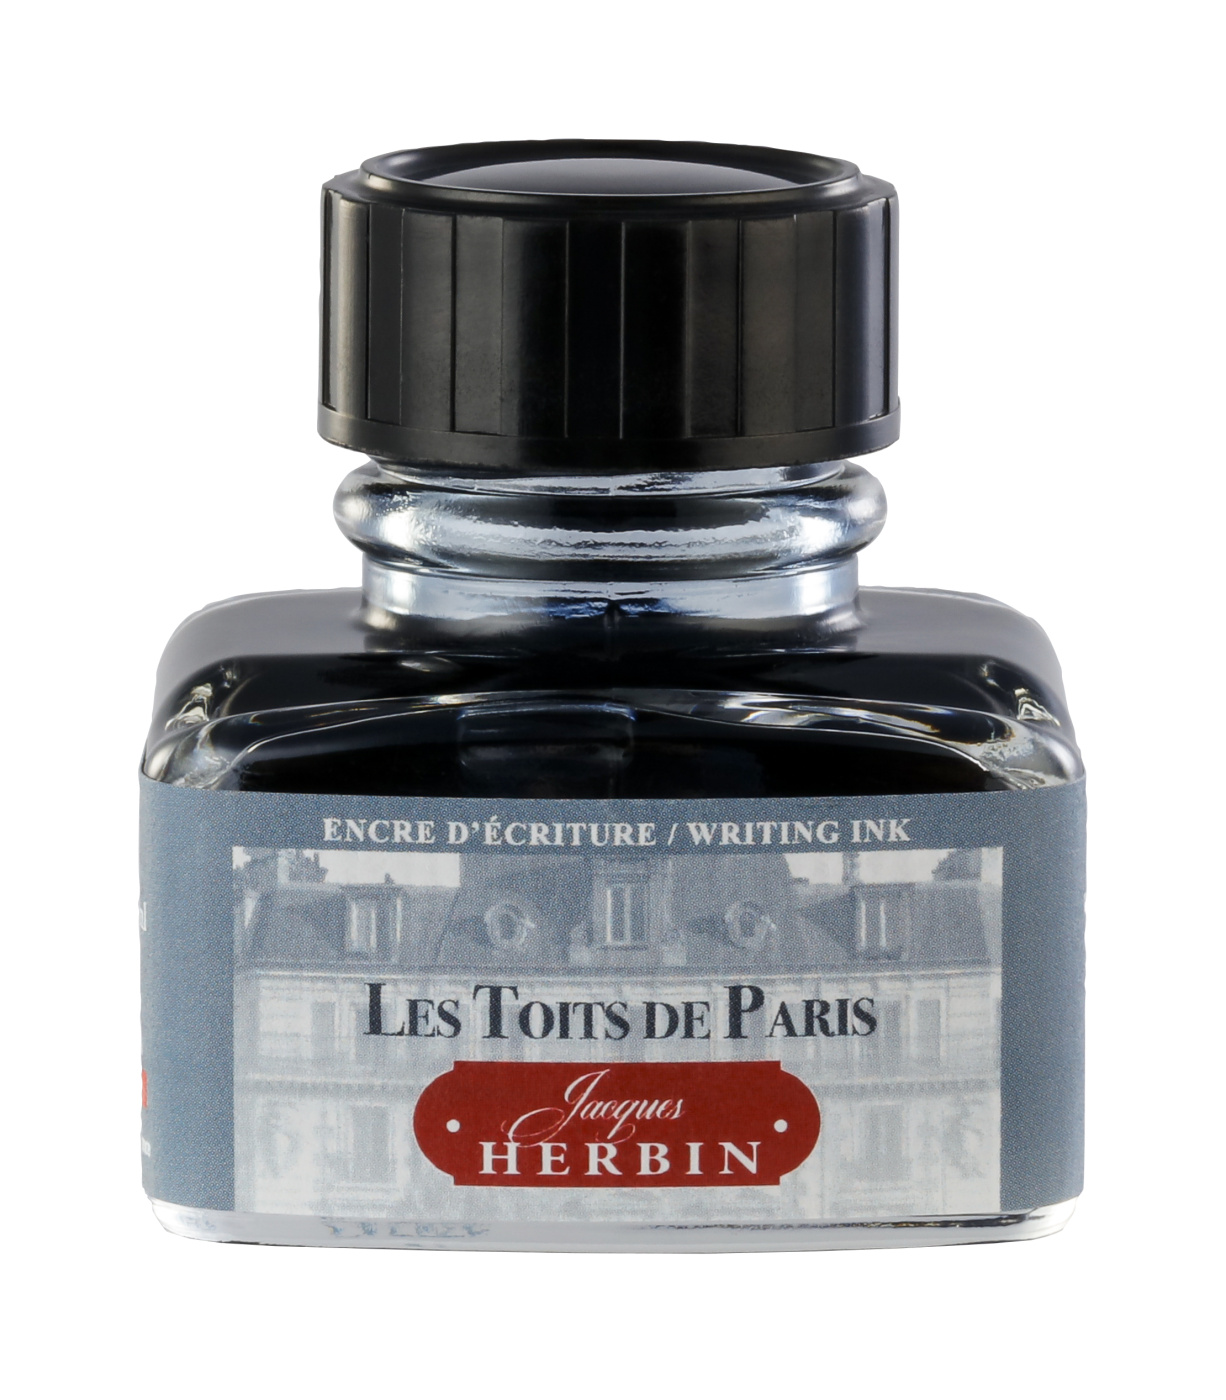 Чернила Herbin в банке 30 мл, Цвета Парижа Les Toits De Paris Серый rose de paris